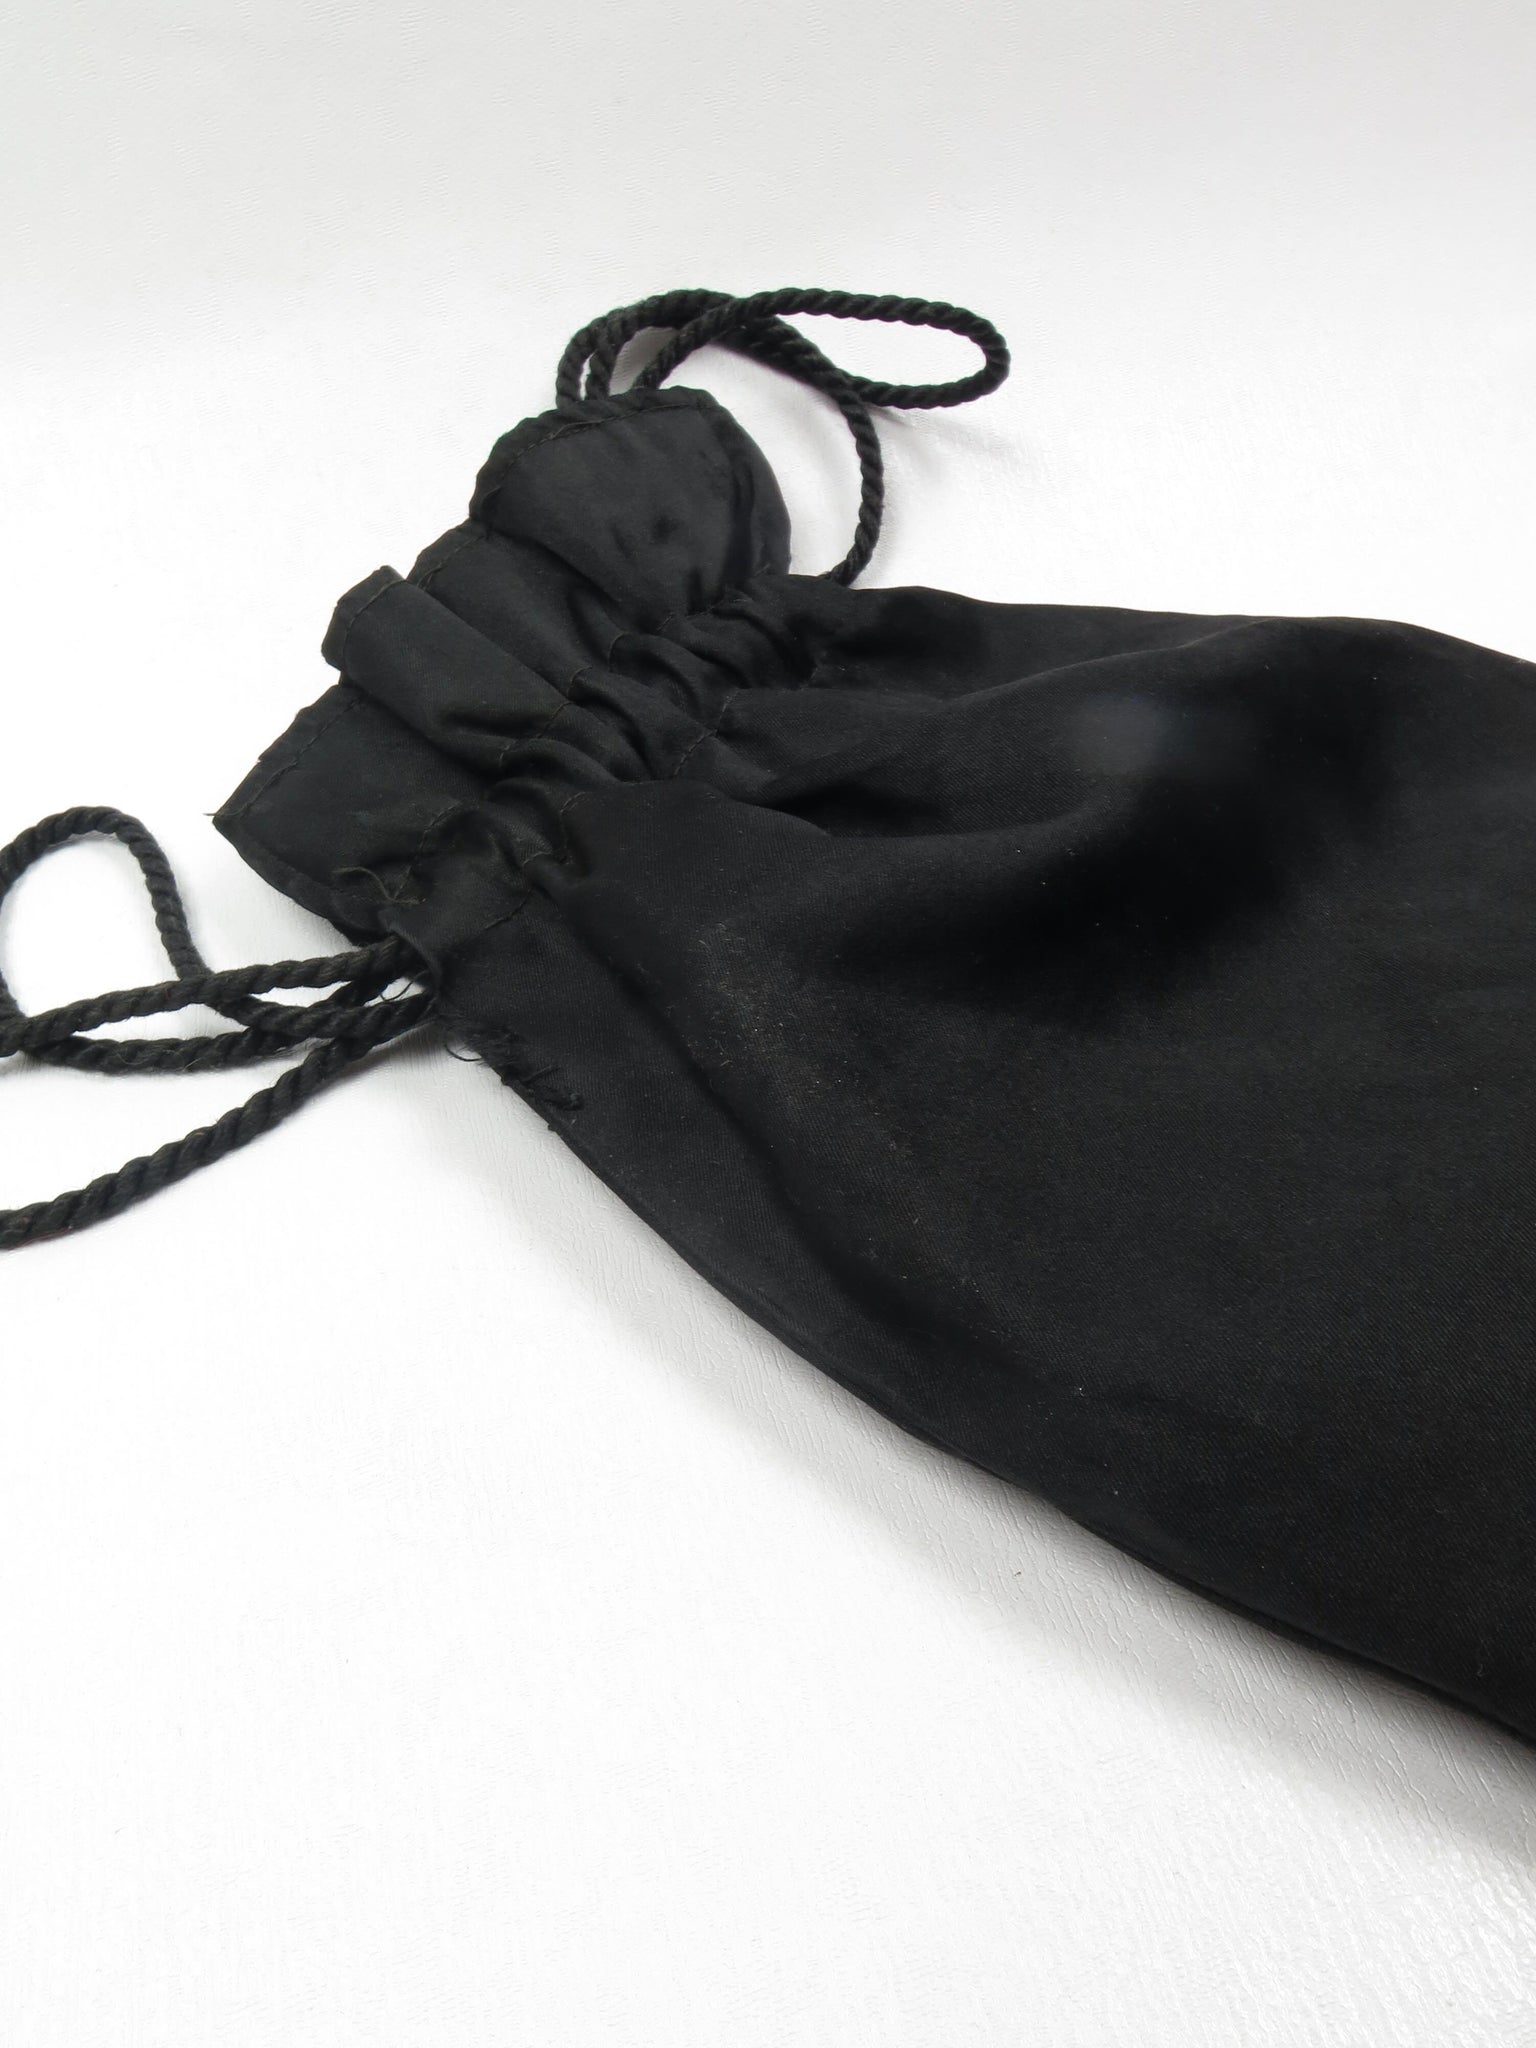 Vintage Black Fringed Silk Pouch Bag - The Harlequin